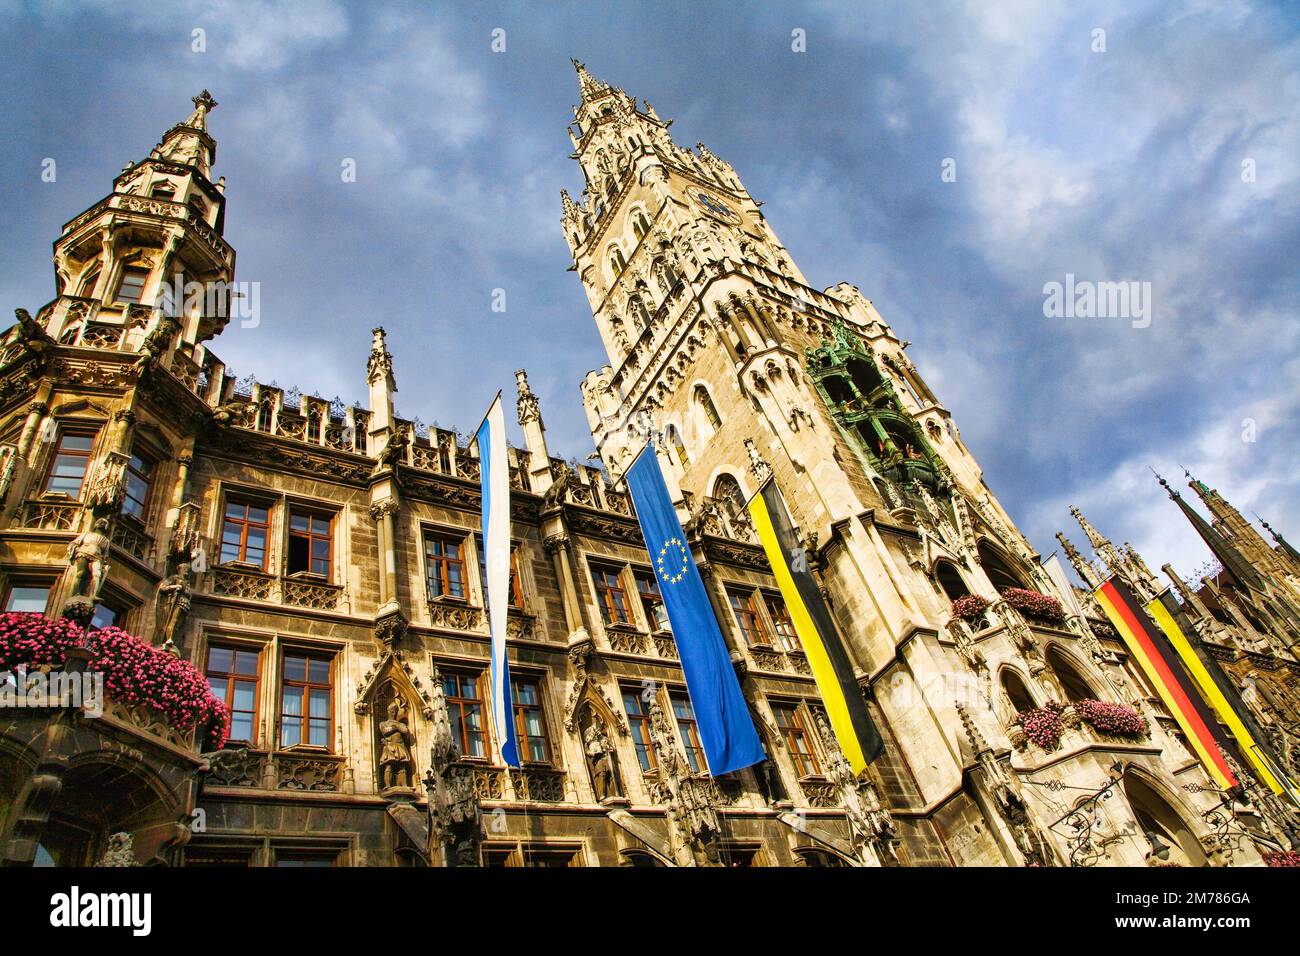 The Rathaus Glockenspiel at Marienplatz, Munich, Germany Stock Photo